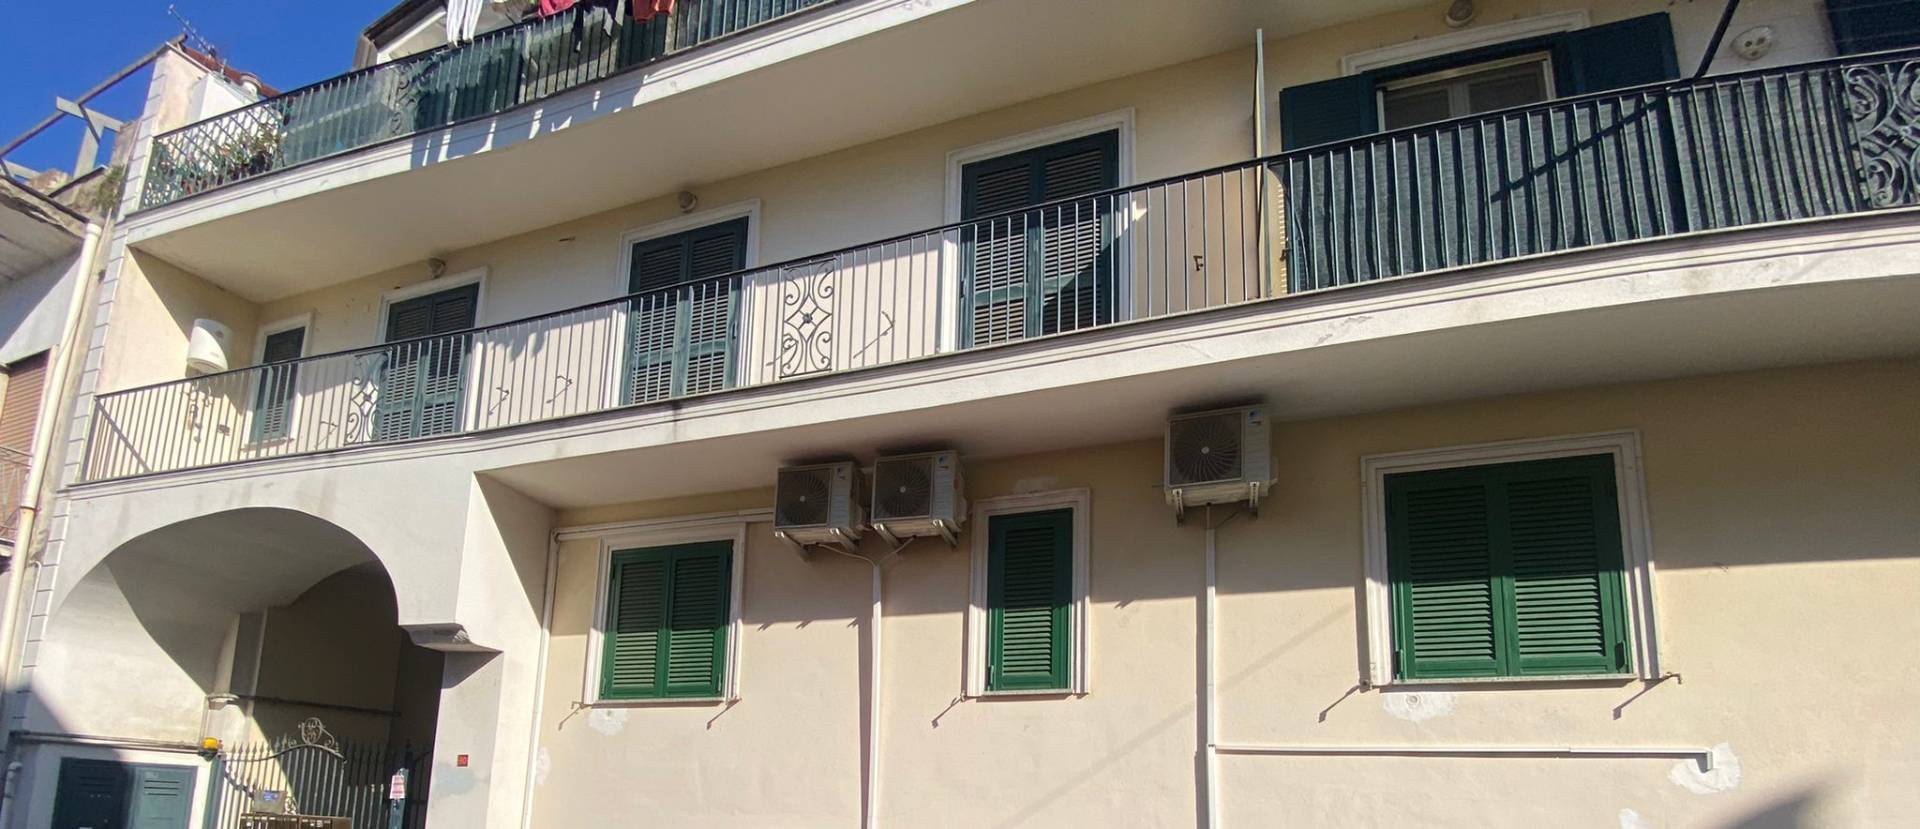 Appartamento in vendita a San Vitaliano, 3 locali, prezzo € 85.000 | PortaleAgenzieImmobiliari.it